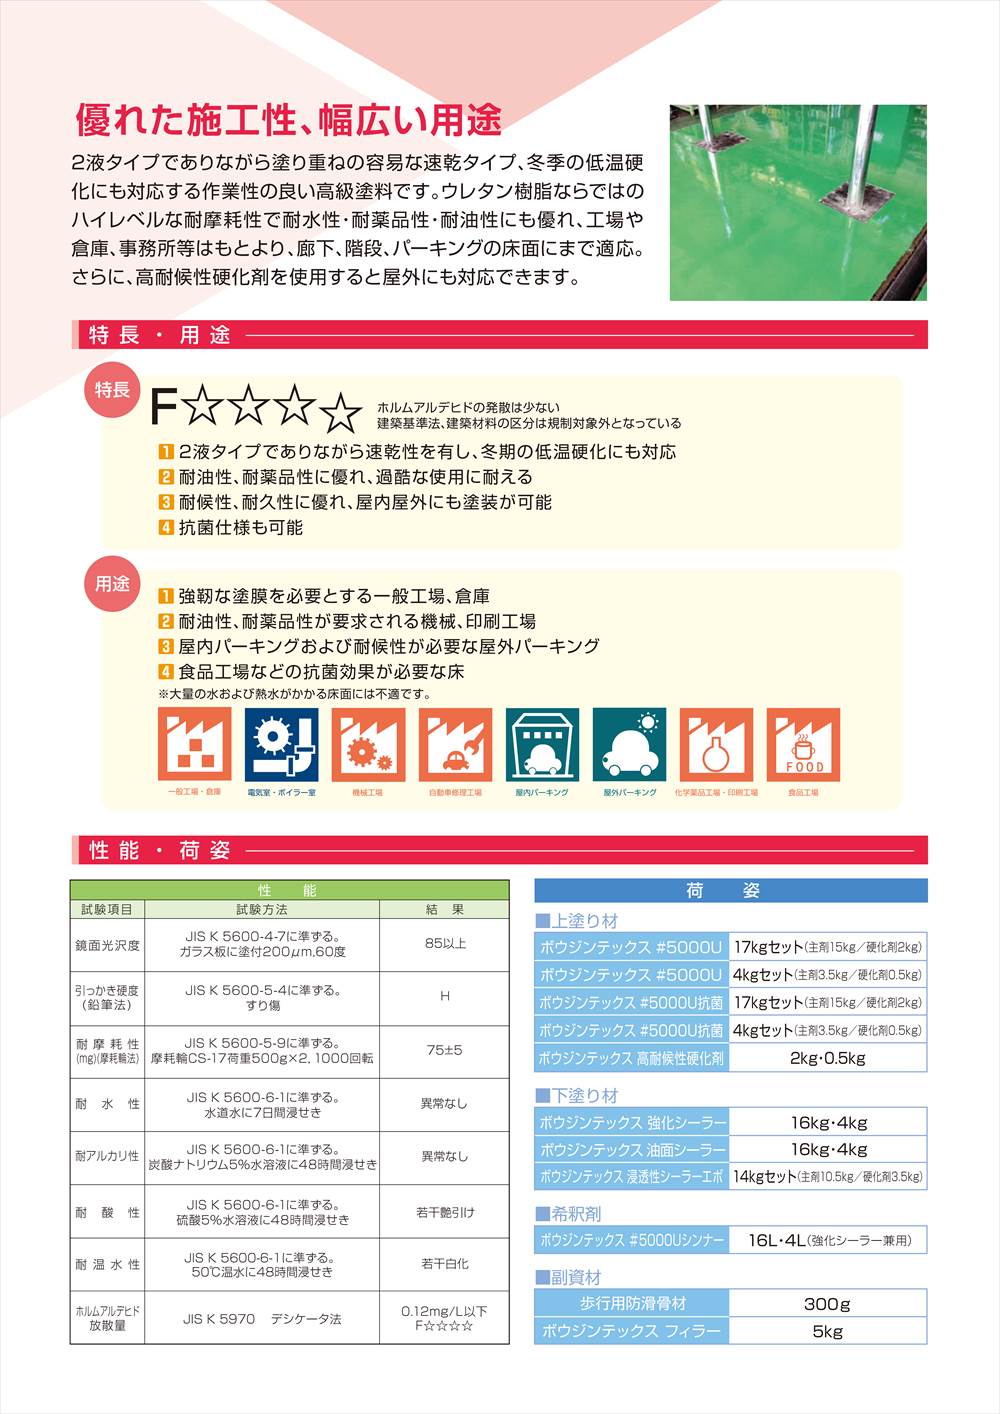 ボウジンテックス#5000U 高耐候性 4kgセット【メーカー直送便/代引不可